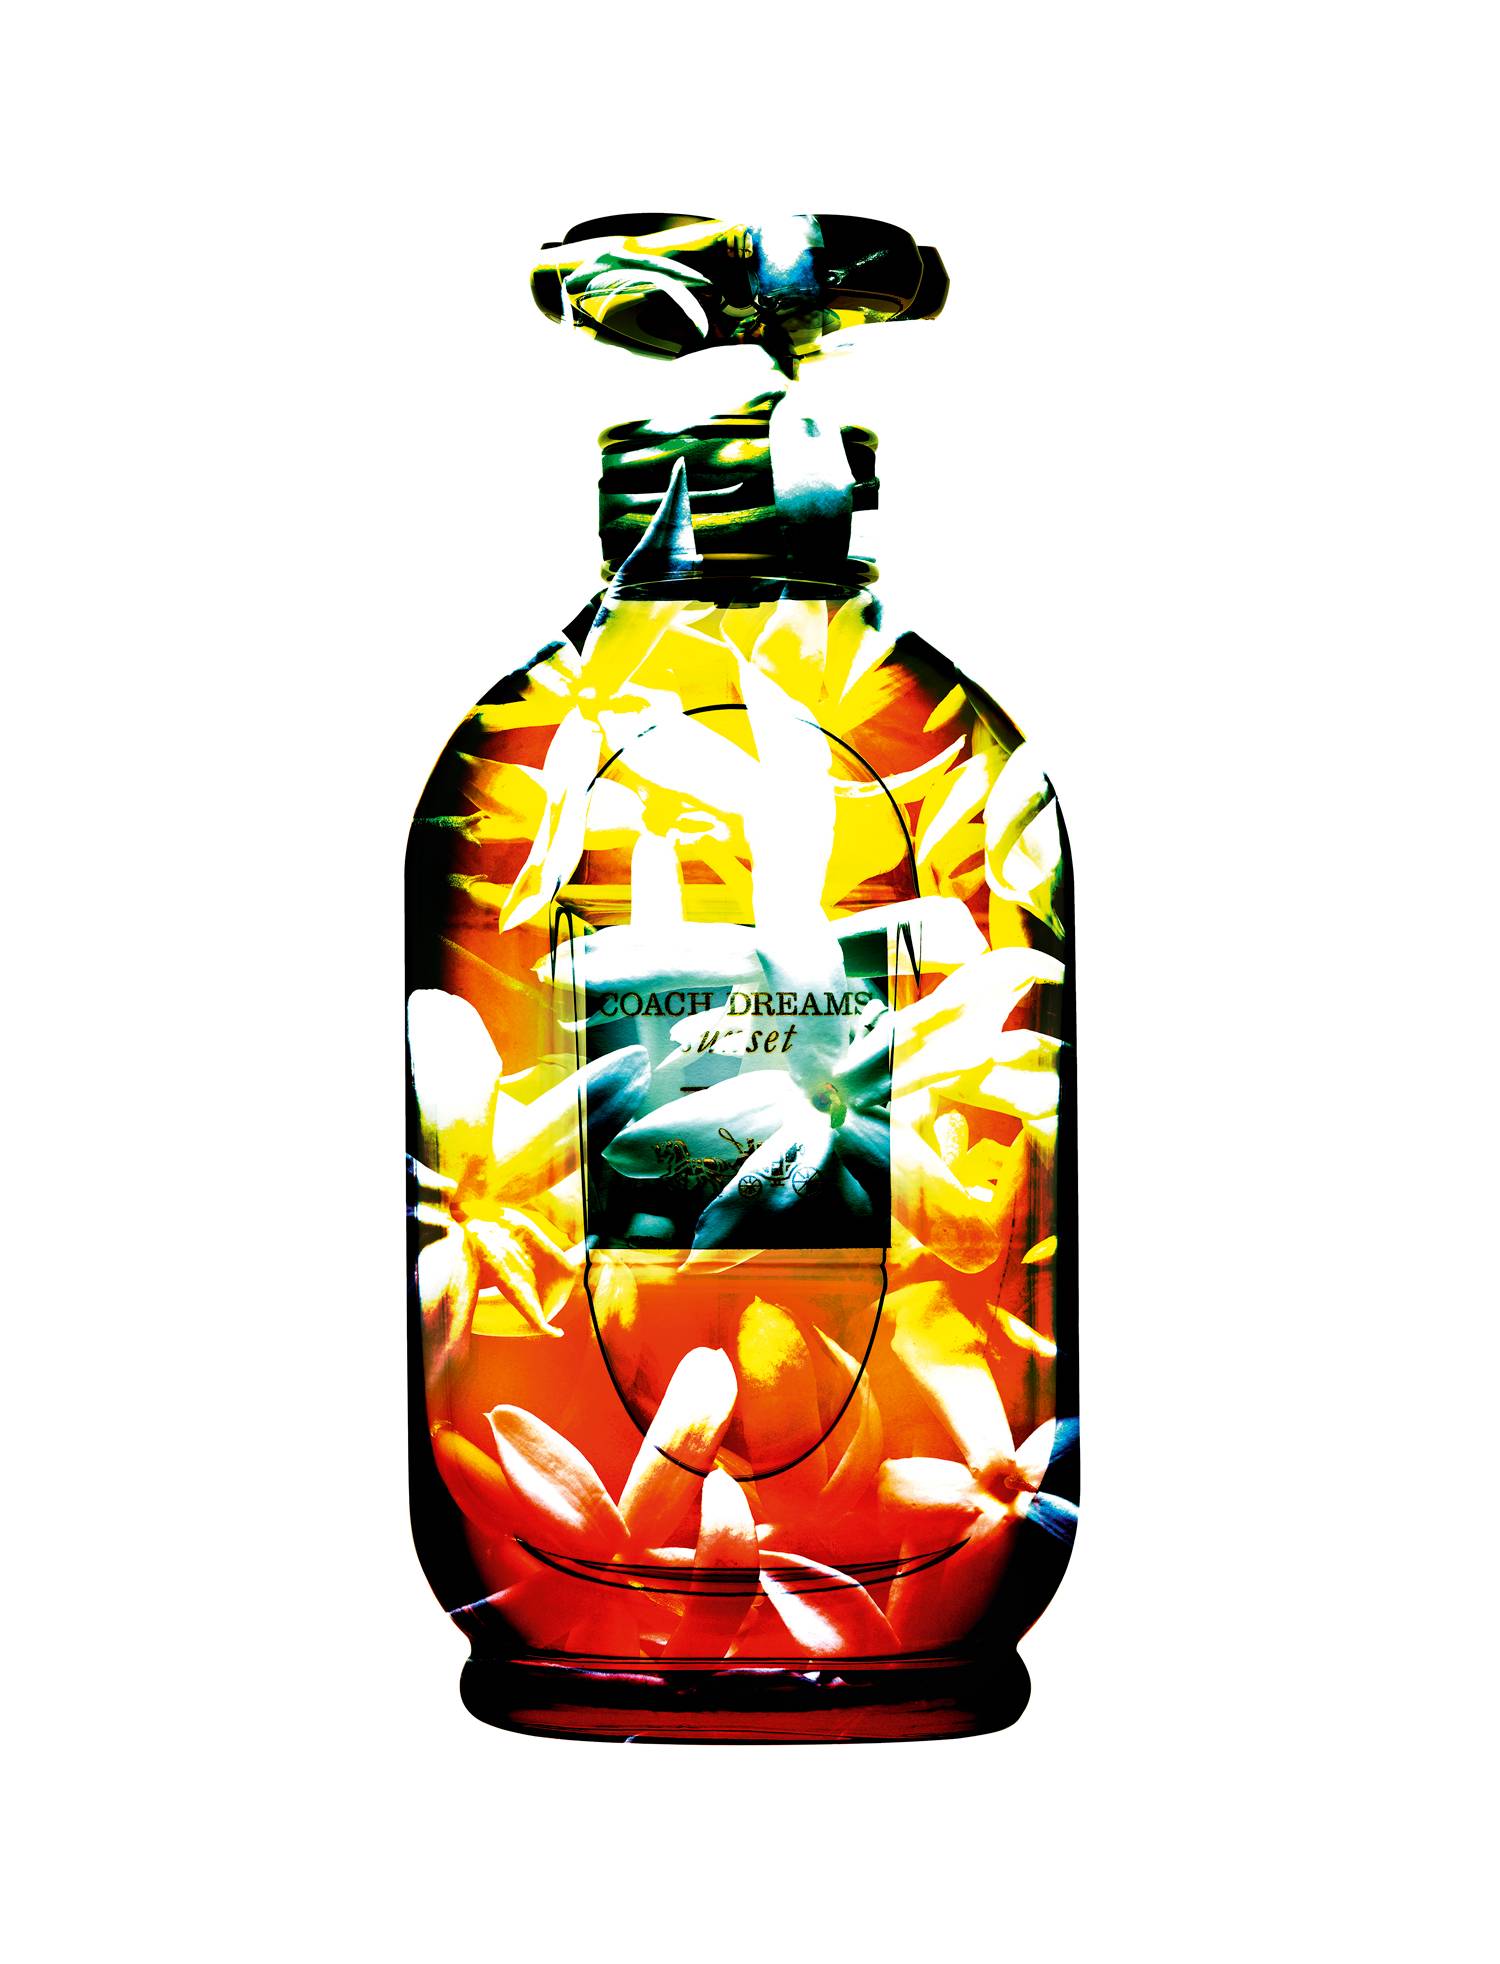 “Coach Dreams Sunset”, eau de parfum, COACH.